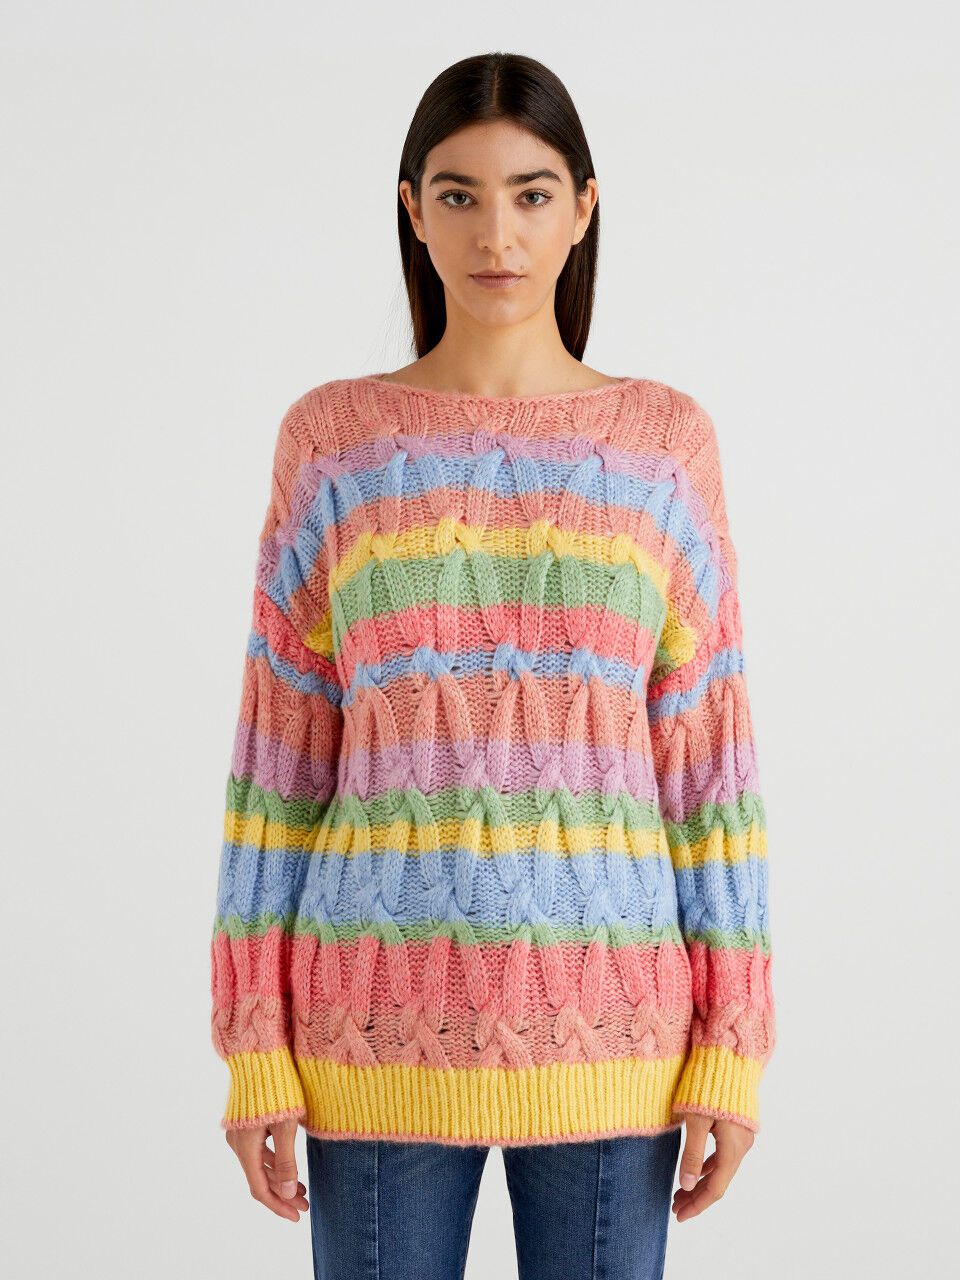 Multicolored boat neck sweater